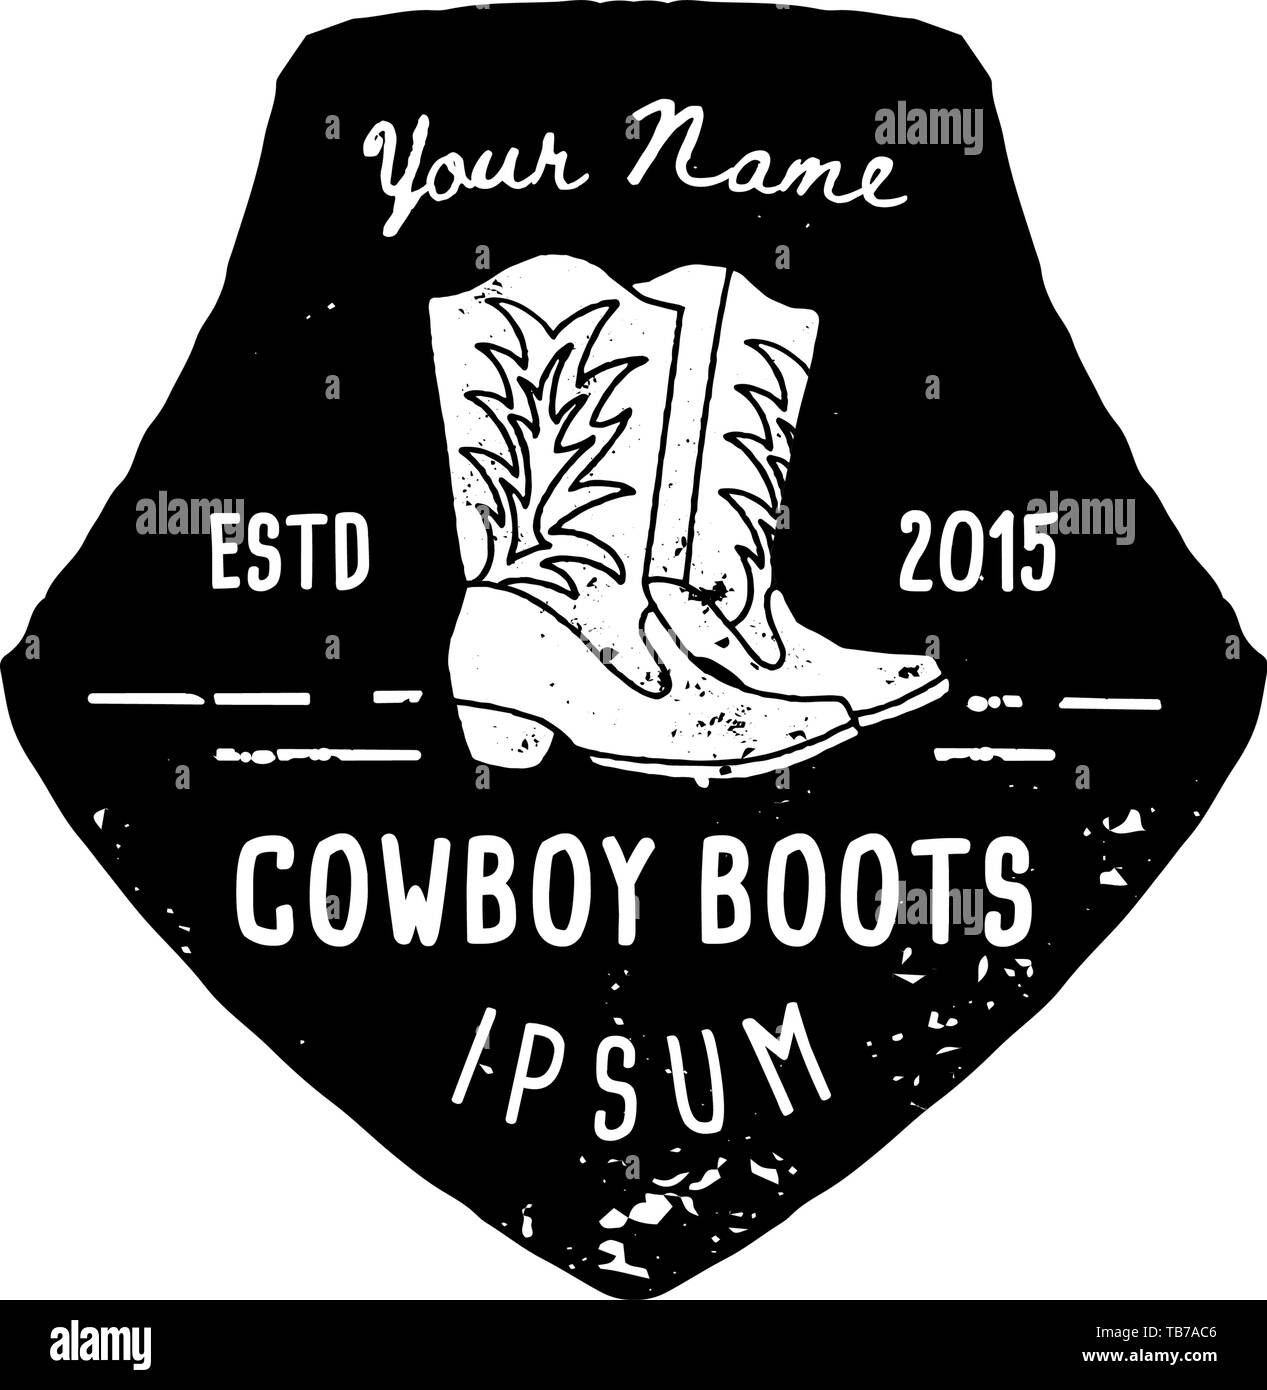 Logotipo occidental botas vaqueras dibujar a mano de estilo grunge. El  símbolo Wild West cantar de botas vaqueras y tipografía Retro. Vintage  emblema para botas vaqueras hechas a mano, póster, t-shirt, cubierta,